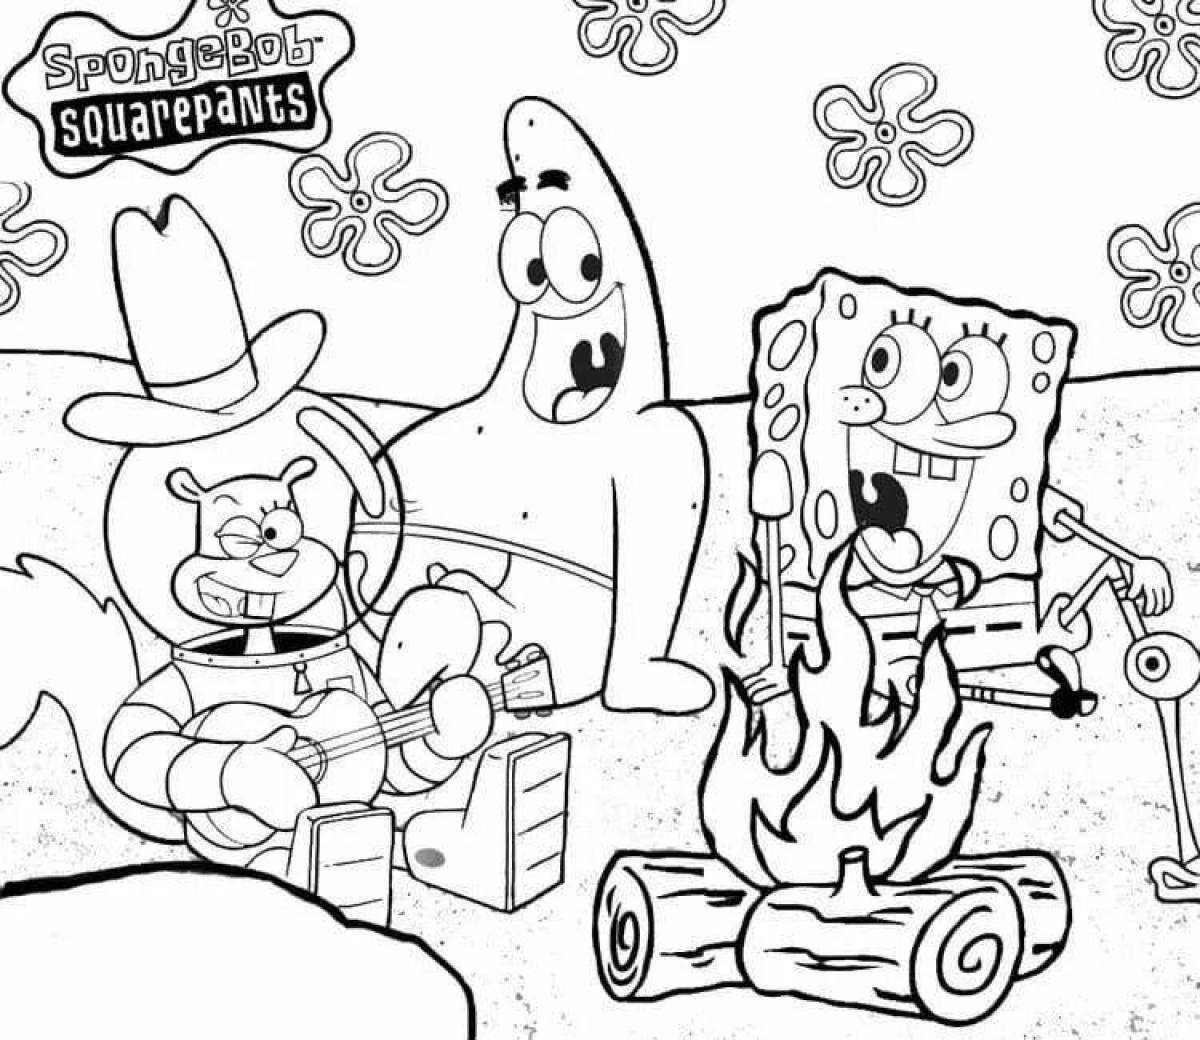 Spongebob's fun coloring page